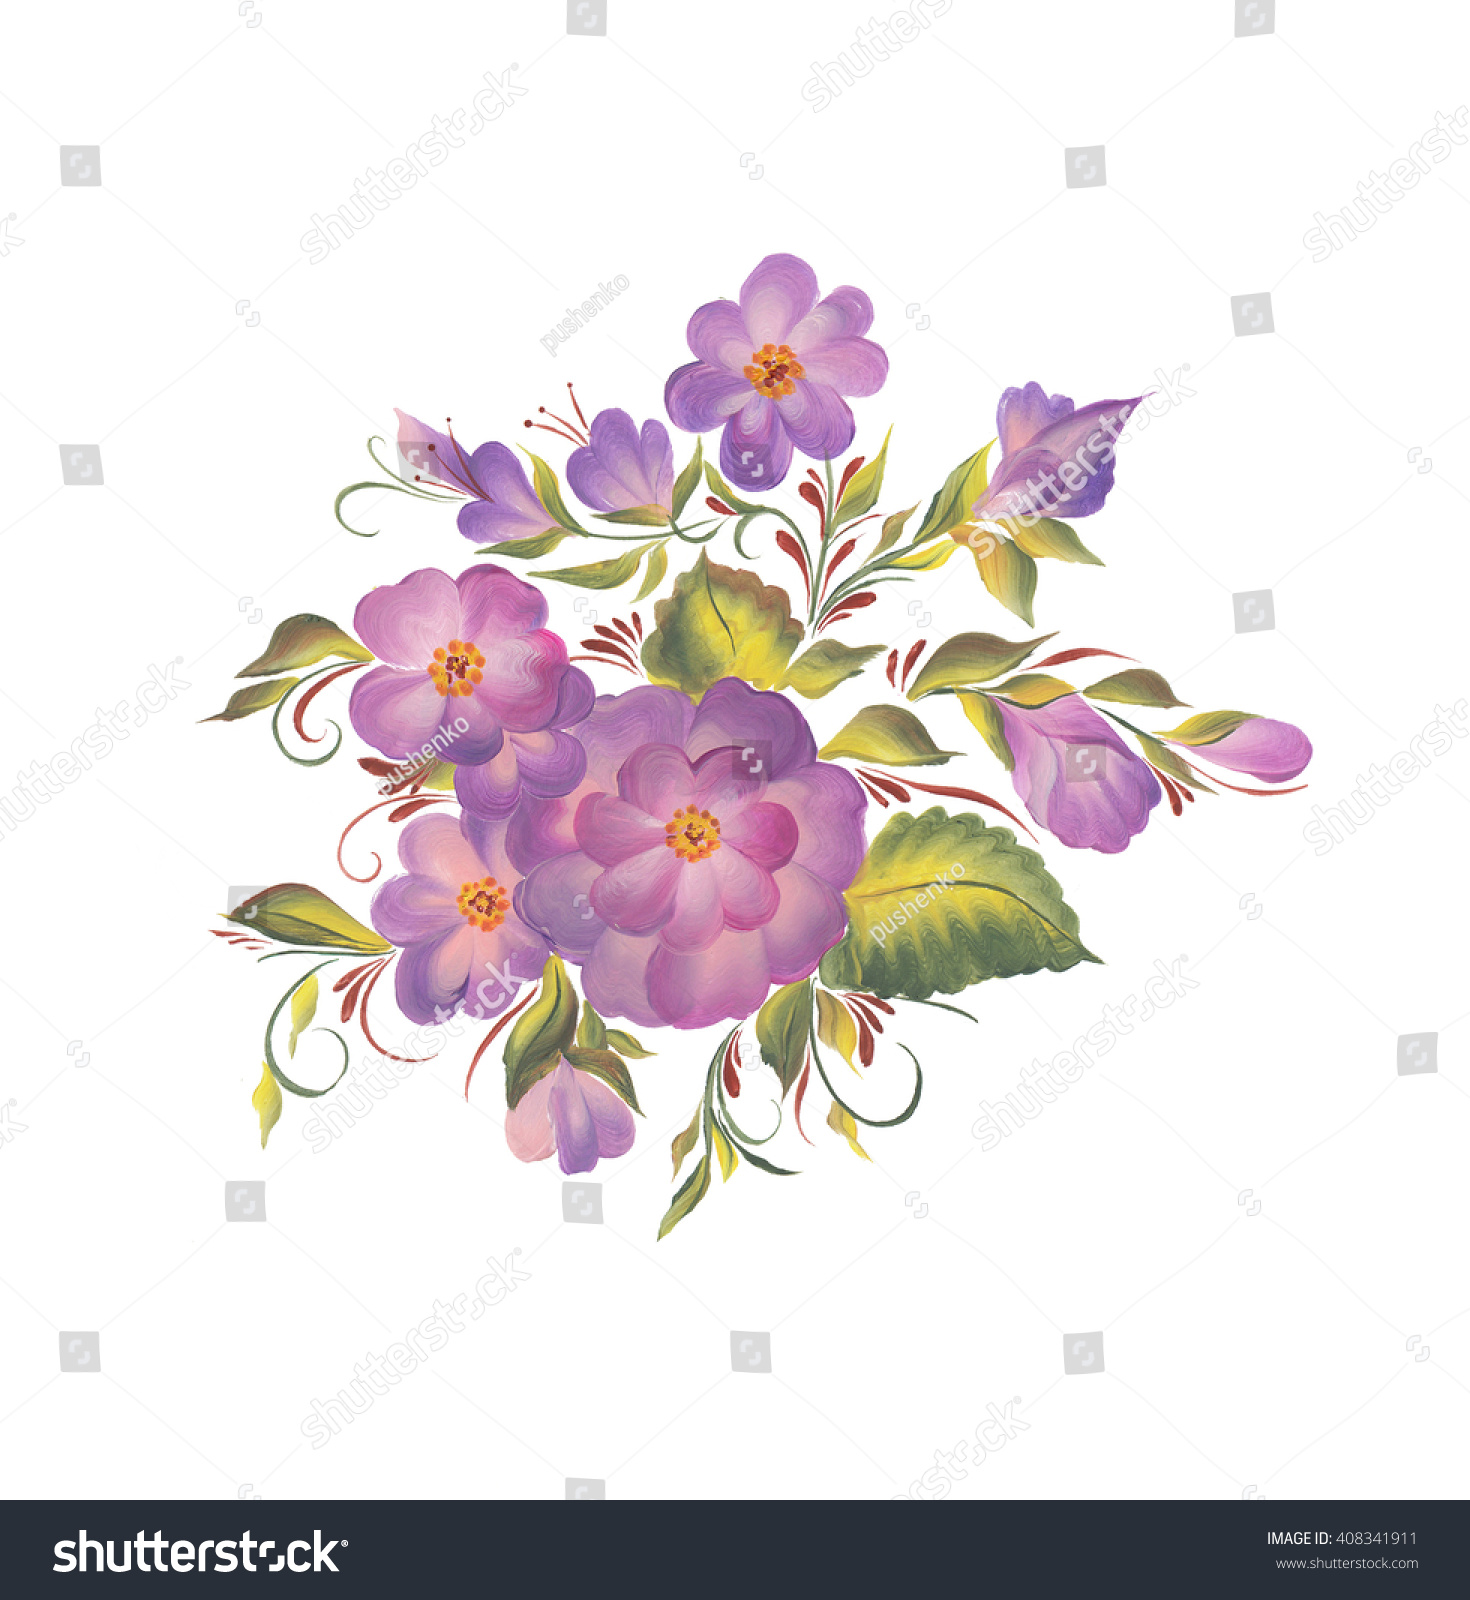 Spring Purple Flowers Design Handdrawing Violet Stock Illustration ...